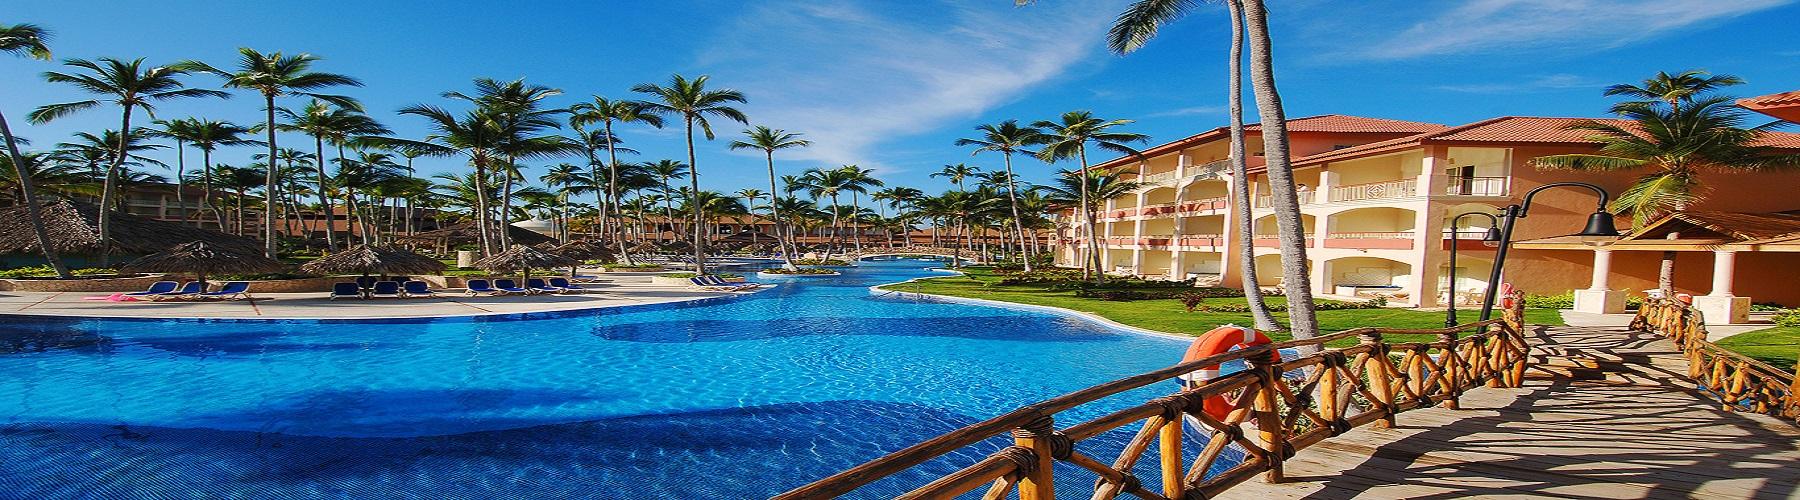 Отель в Доминикане Majestic Elegance Punta Cana 5*